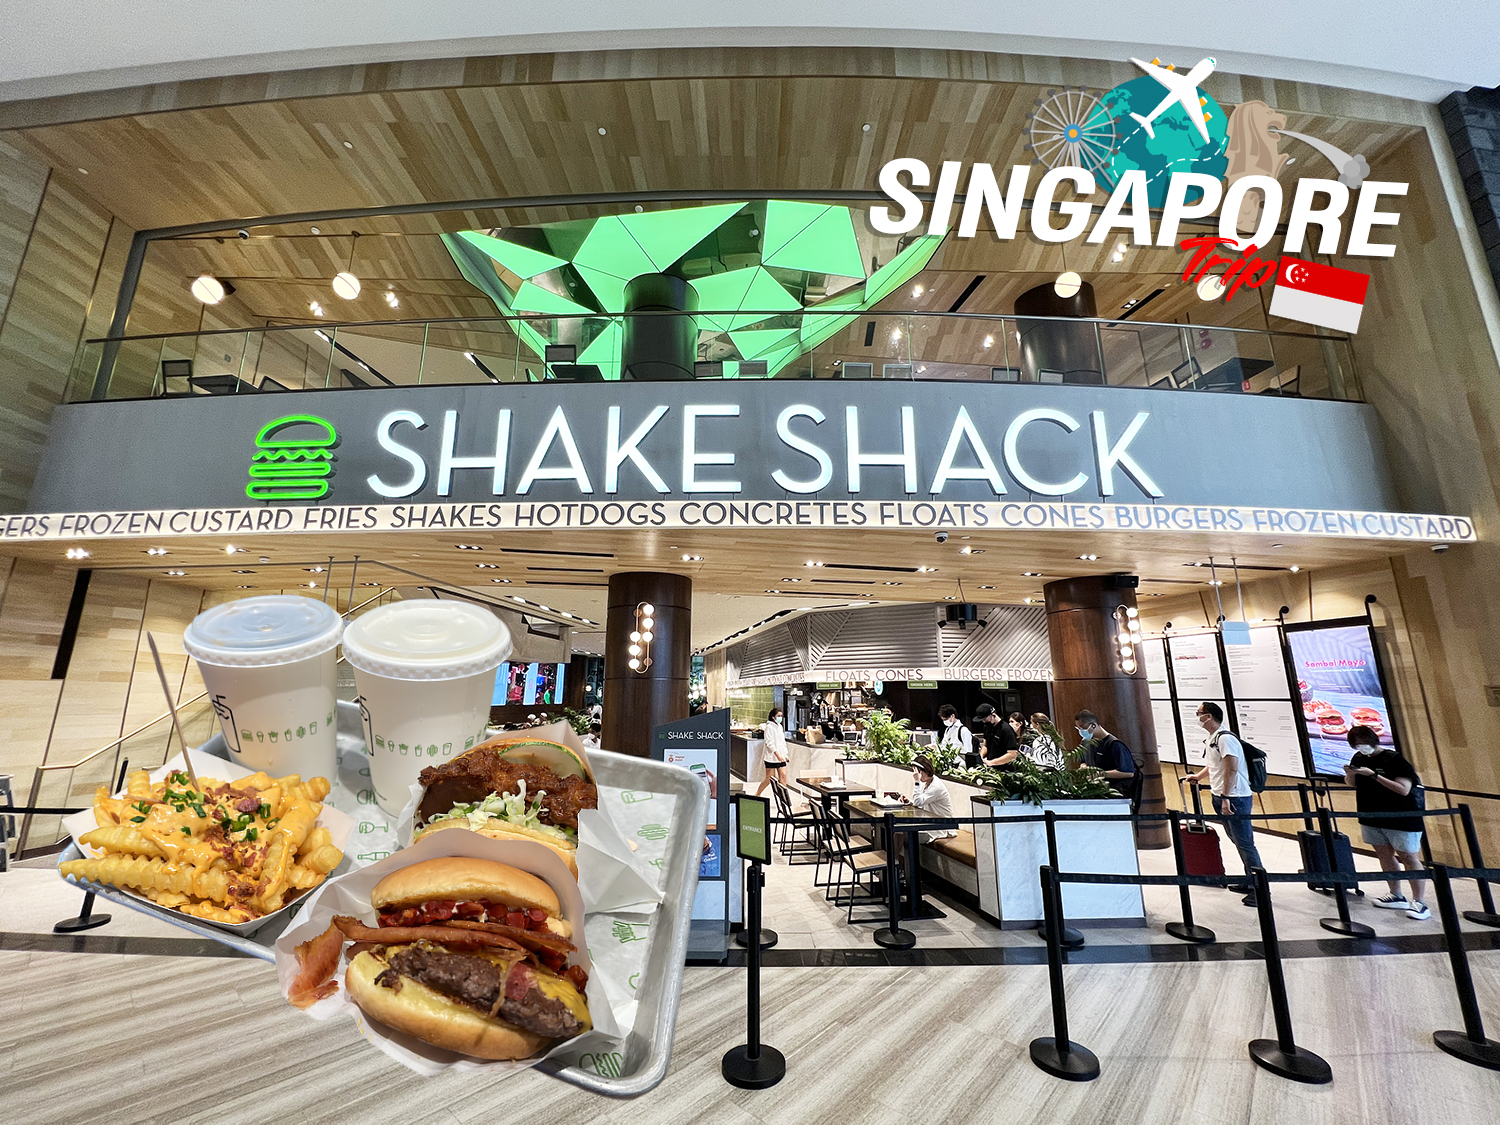 กิน Shake Shack Burger สนามบินชางงี (Changi Airport) Singapore แบบ Step by Step อร่อยมั๊ย เดี๋ยวบอก…